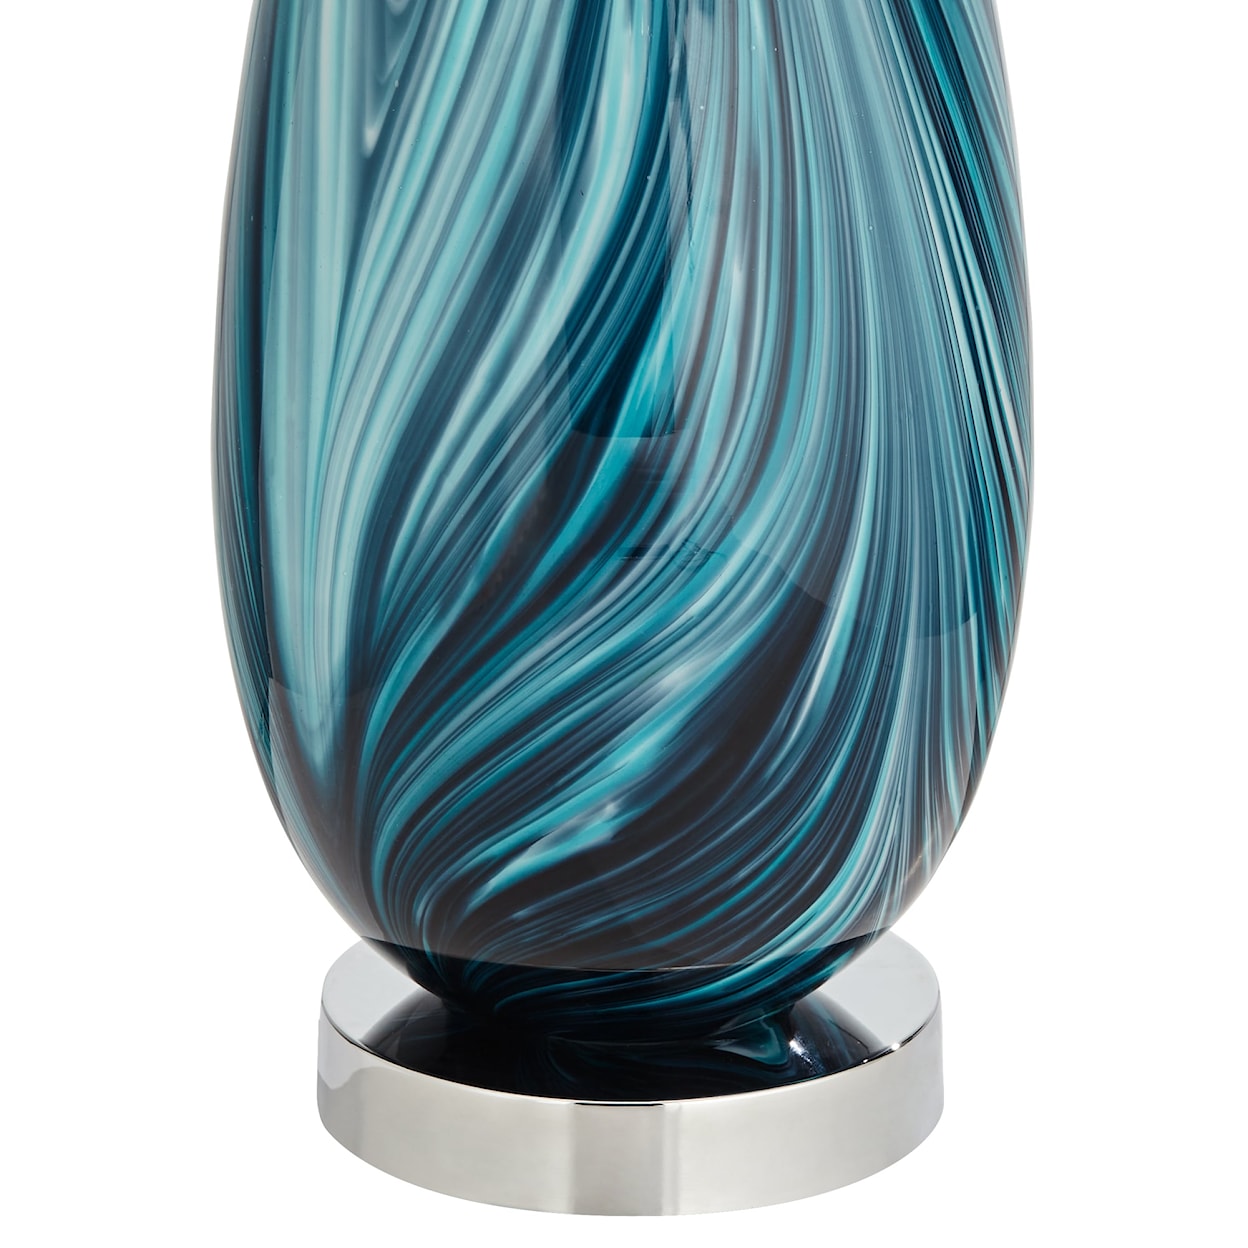 Pacific Coast Lighting Pacific Coast Lighting Tl-27.5 Multi-Color Swirl Art Glass